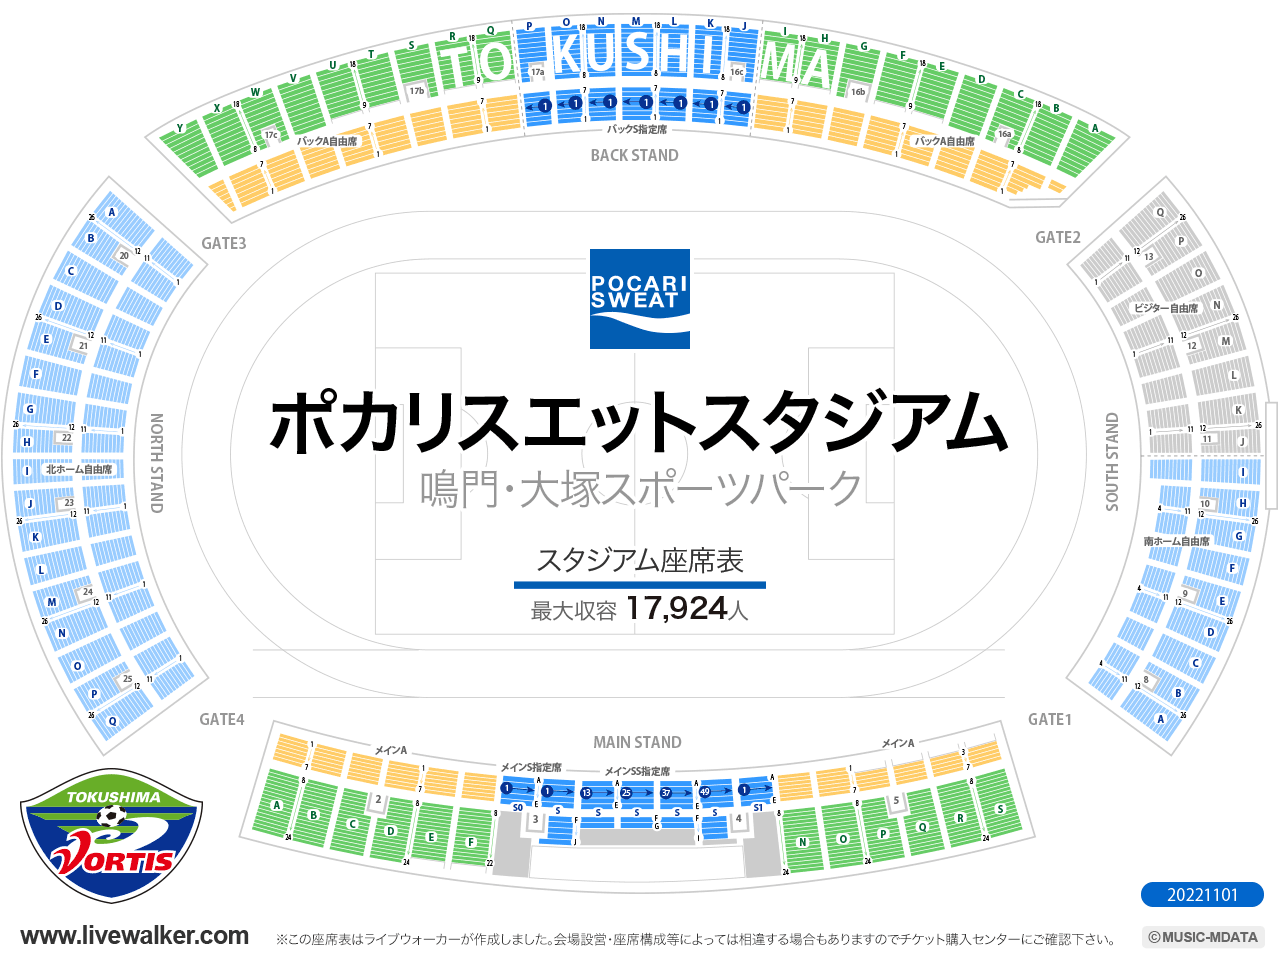 鳴門・大塚スポーツパークポカリスエットスタジアムスタジアムの座席表